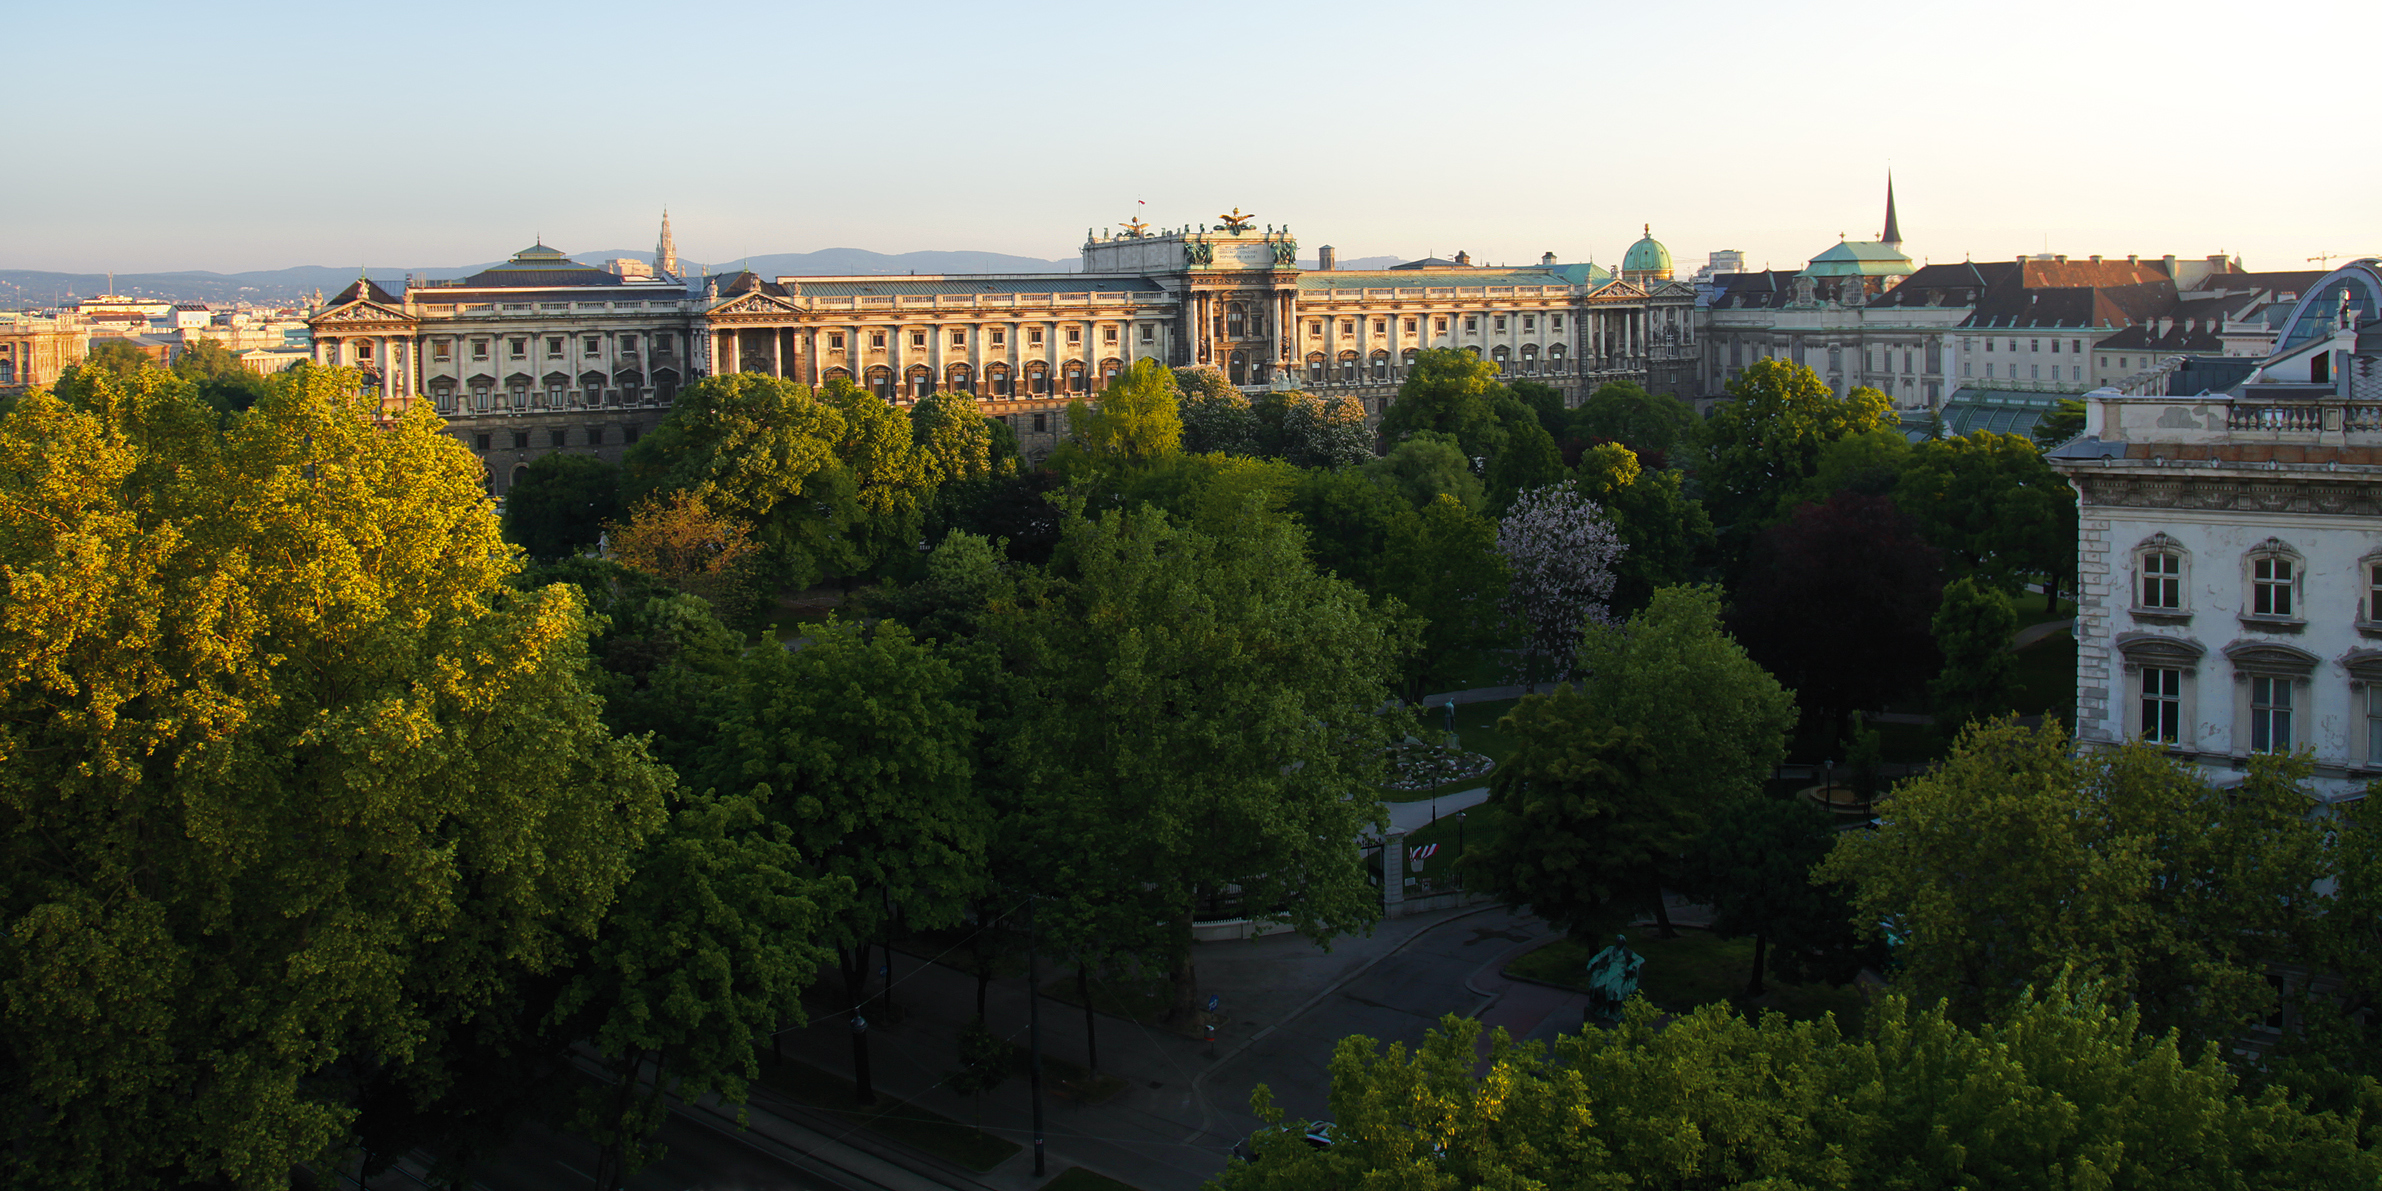 Blick auf Wiens begrünte Stadt mit vielen Bäumen und Gbeäuden